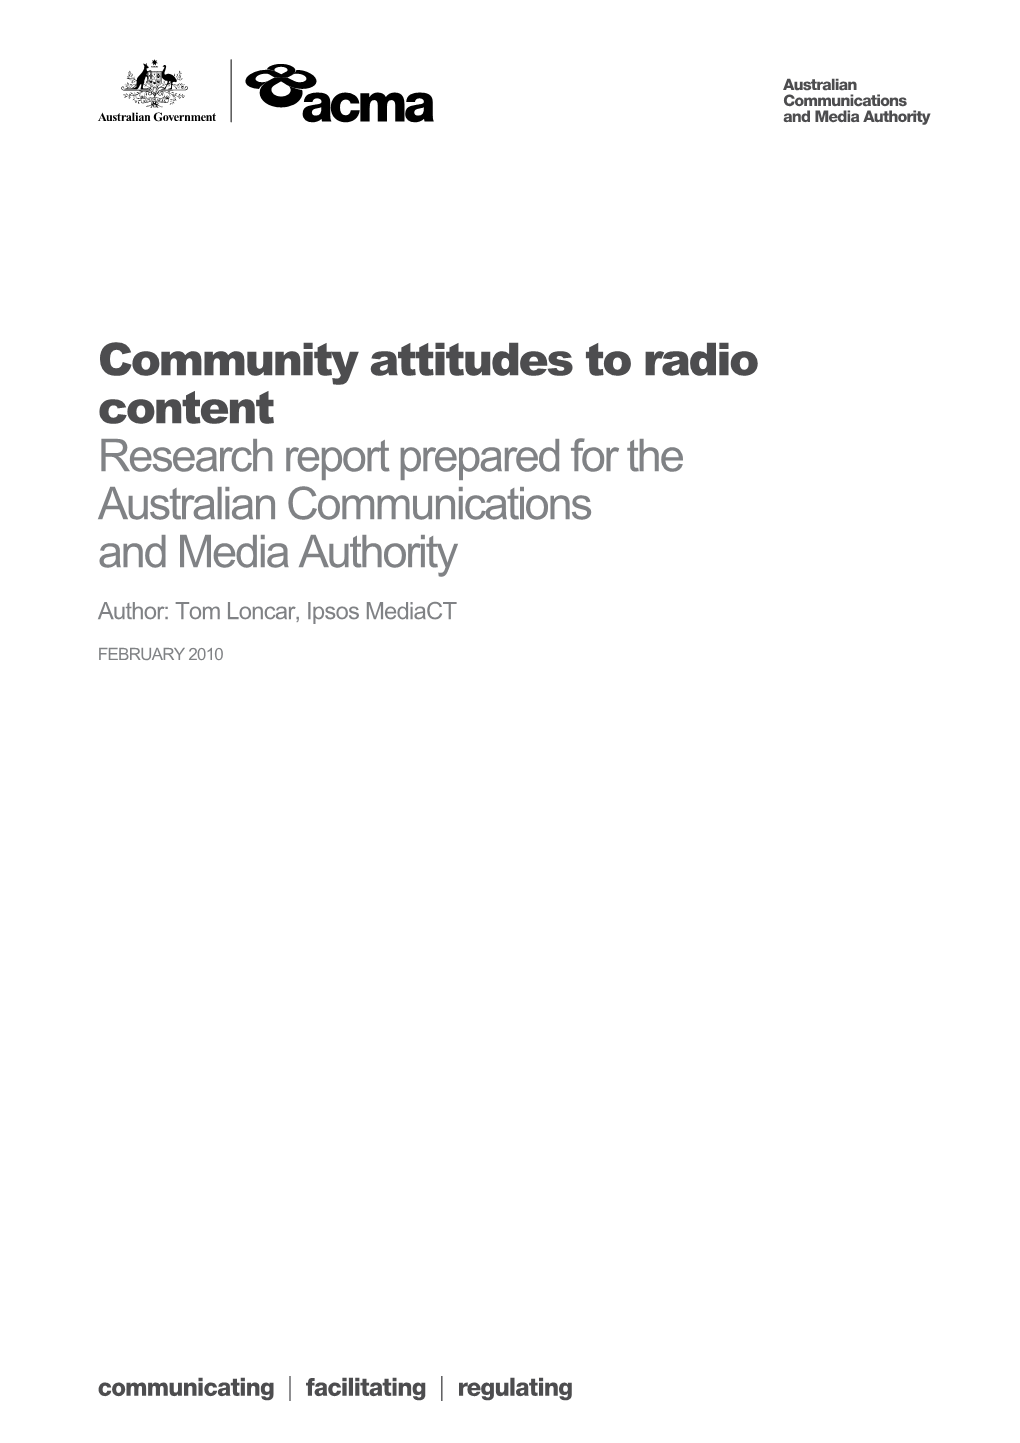 Community Attitudes to Radio Content